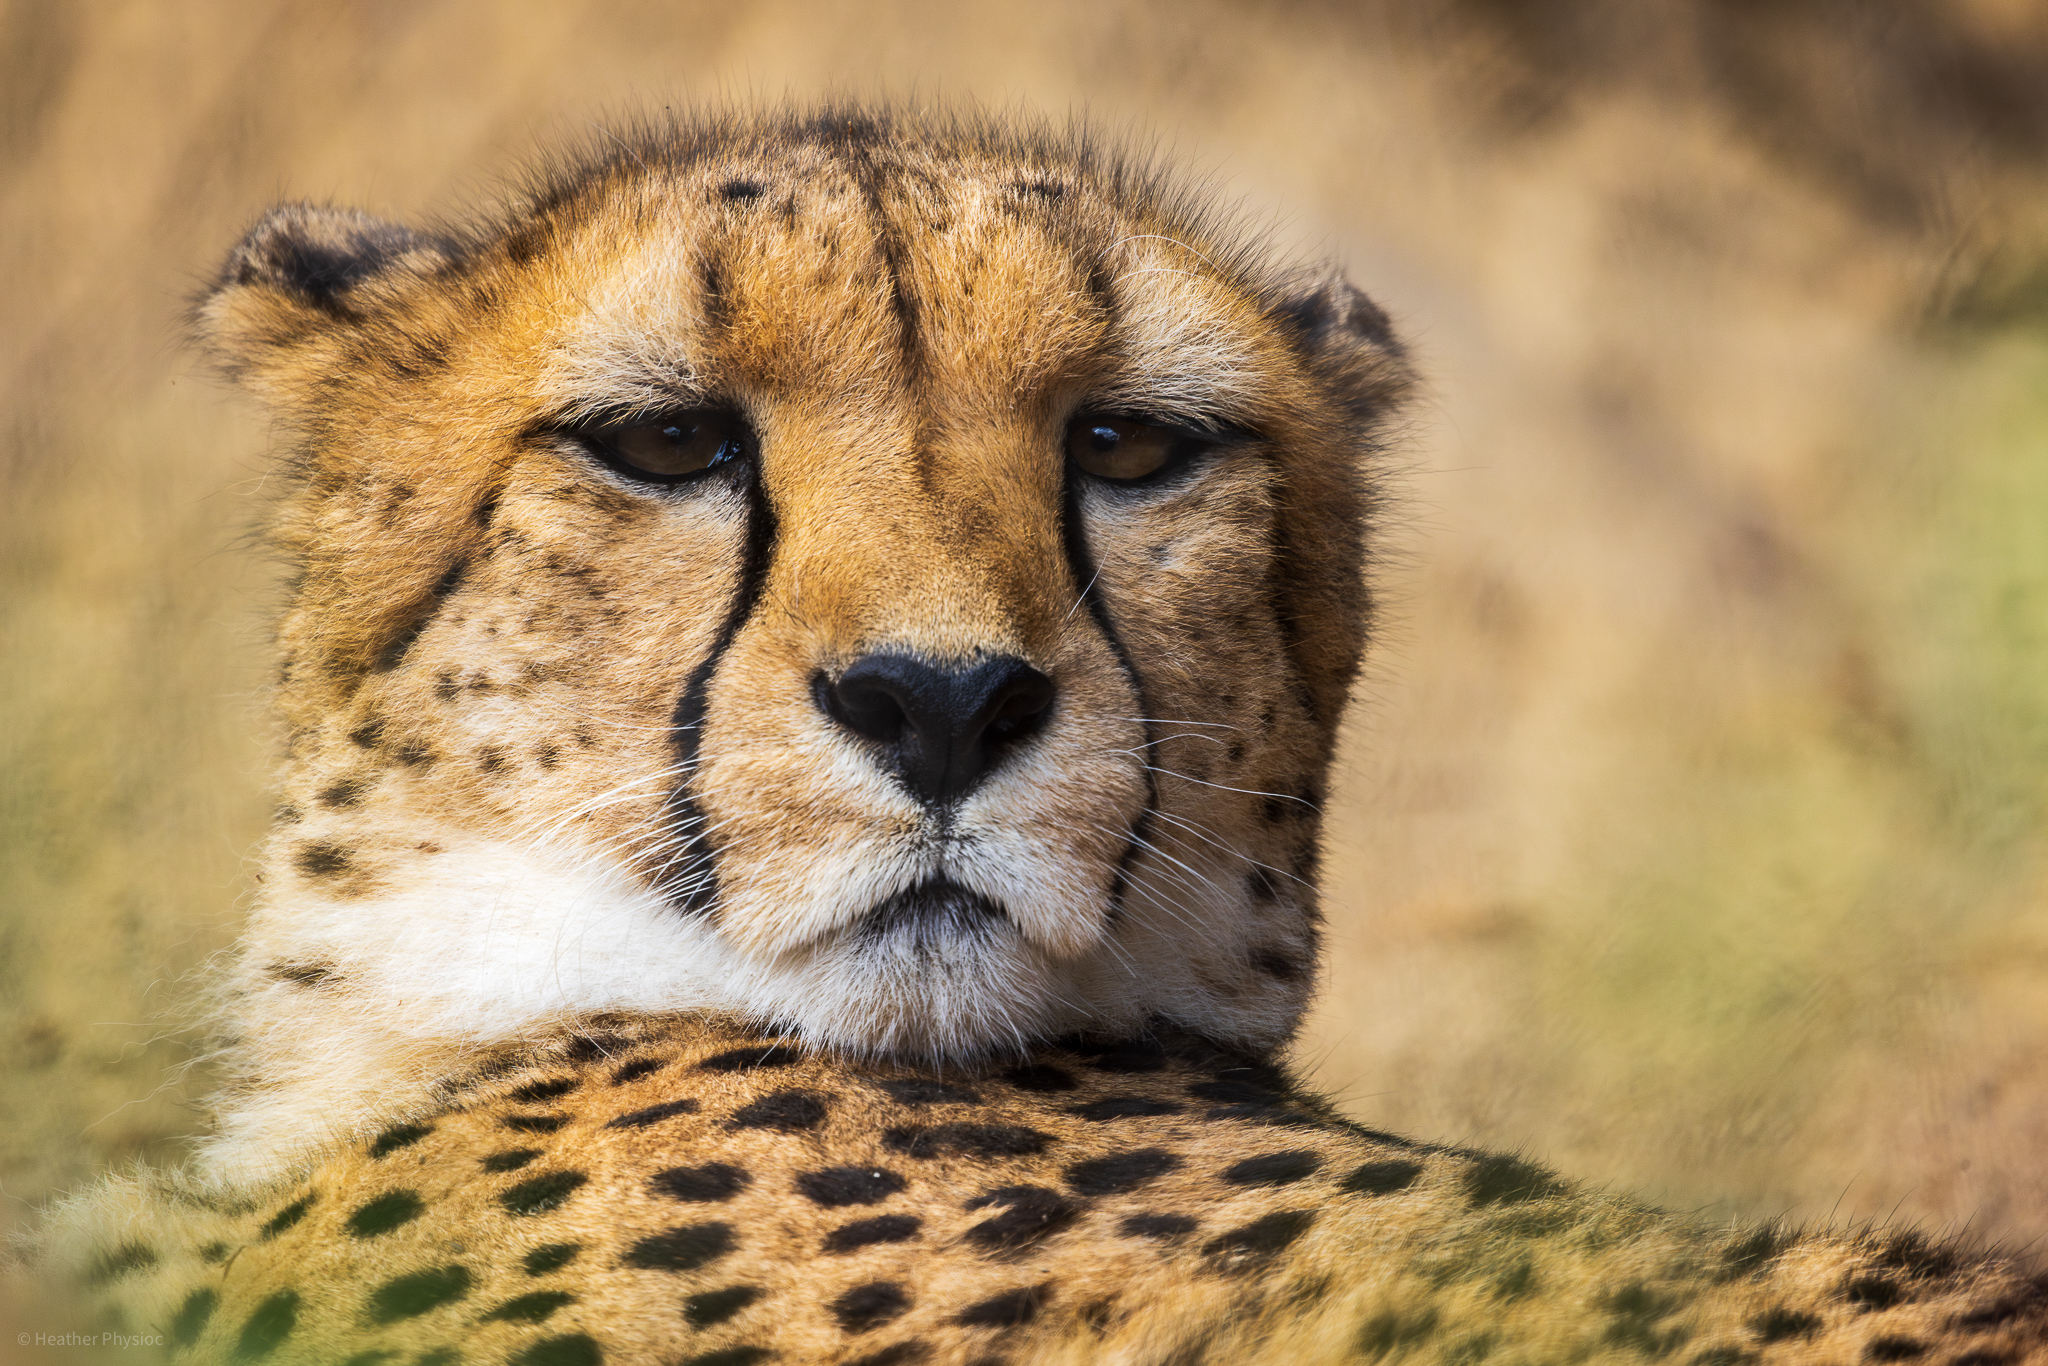 Cheetah lounging at the San Diego Zoo